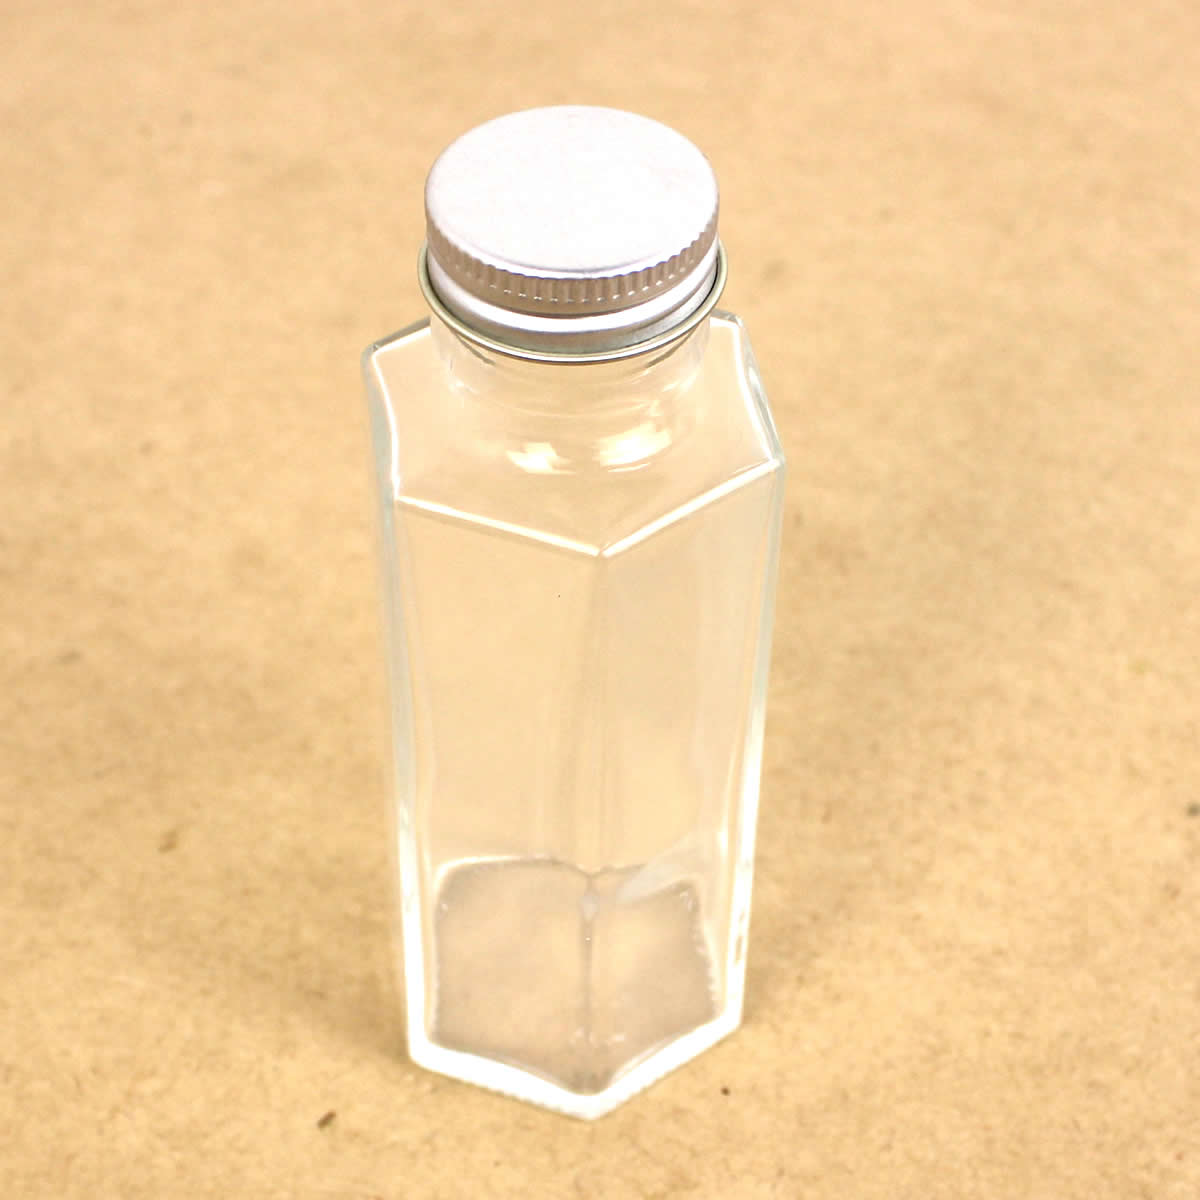 ベビーグッズも大集合ベビーグッズも大集合ハーバリウム瓶(六角)100ml アルミ銀キャップ付 ハーバリウム 瓶・ボトル ガラス瓶 ハーバリウム 